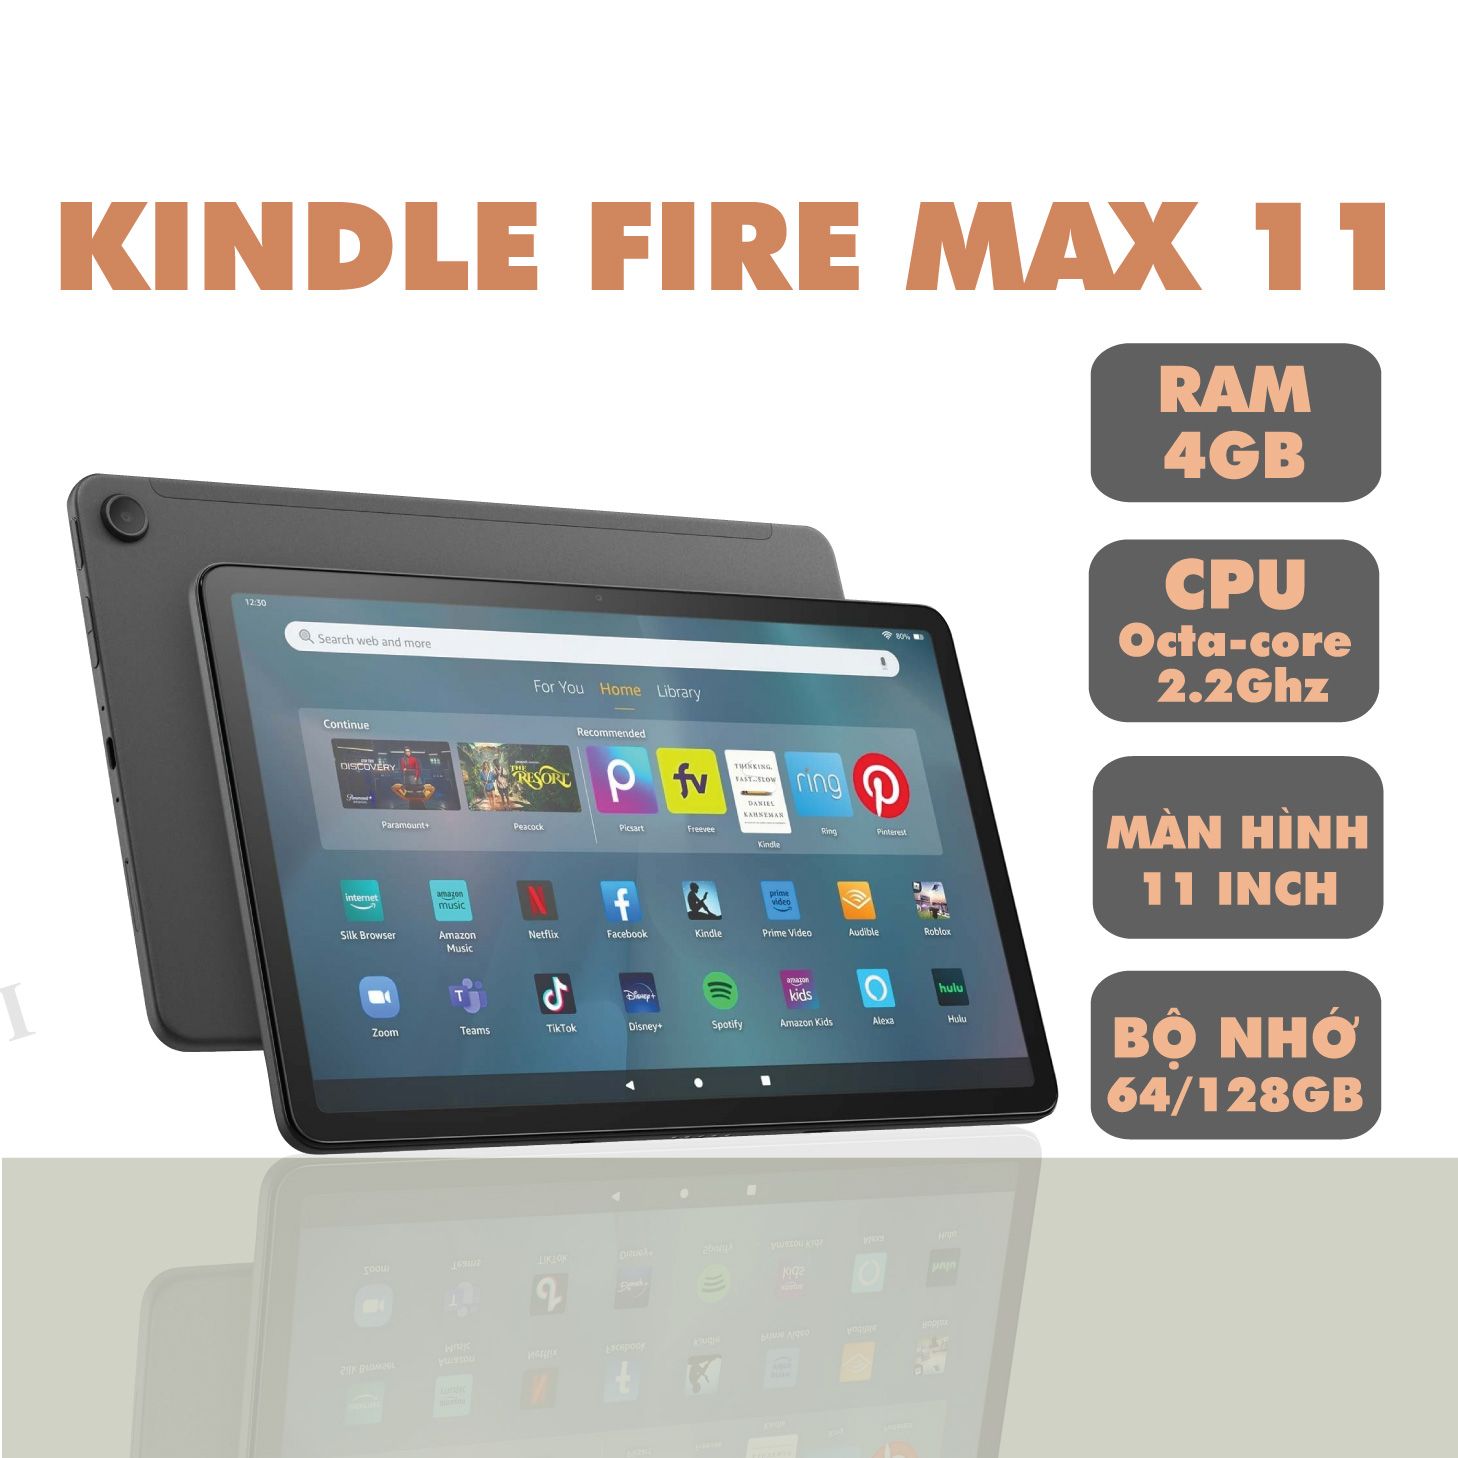 Máy tính bảng Kindle Fire MAX 11, màn hình 11 inch, RAM 4GB, CPU Octa-core 2.2Ghz, bộ nhớ 64/128GB – Hàng chính hãng